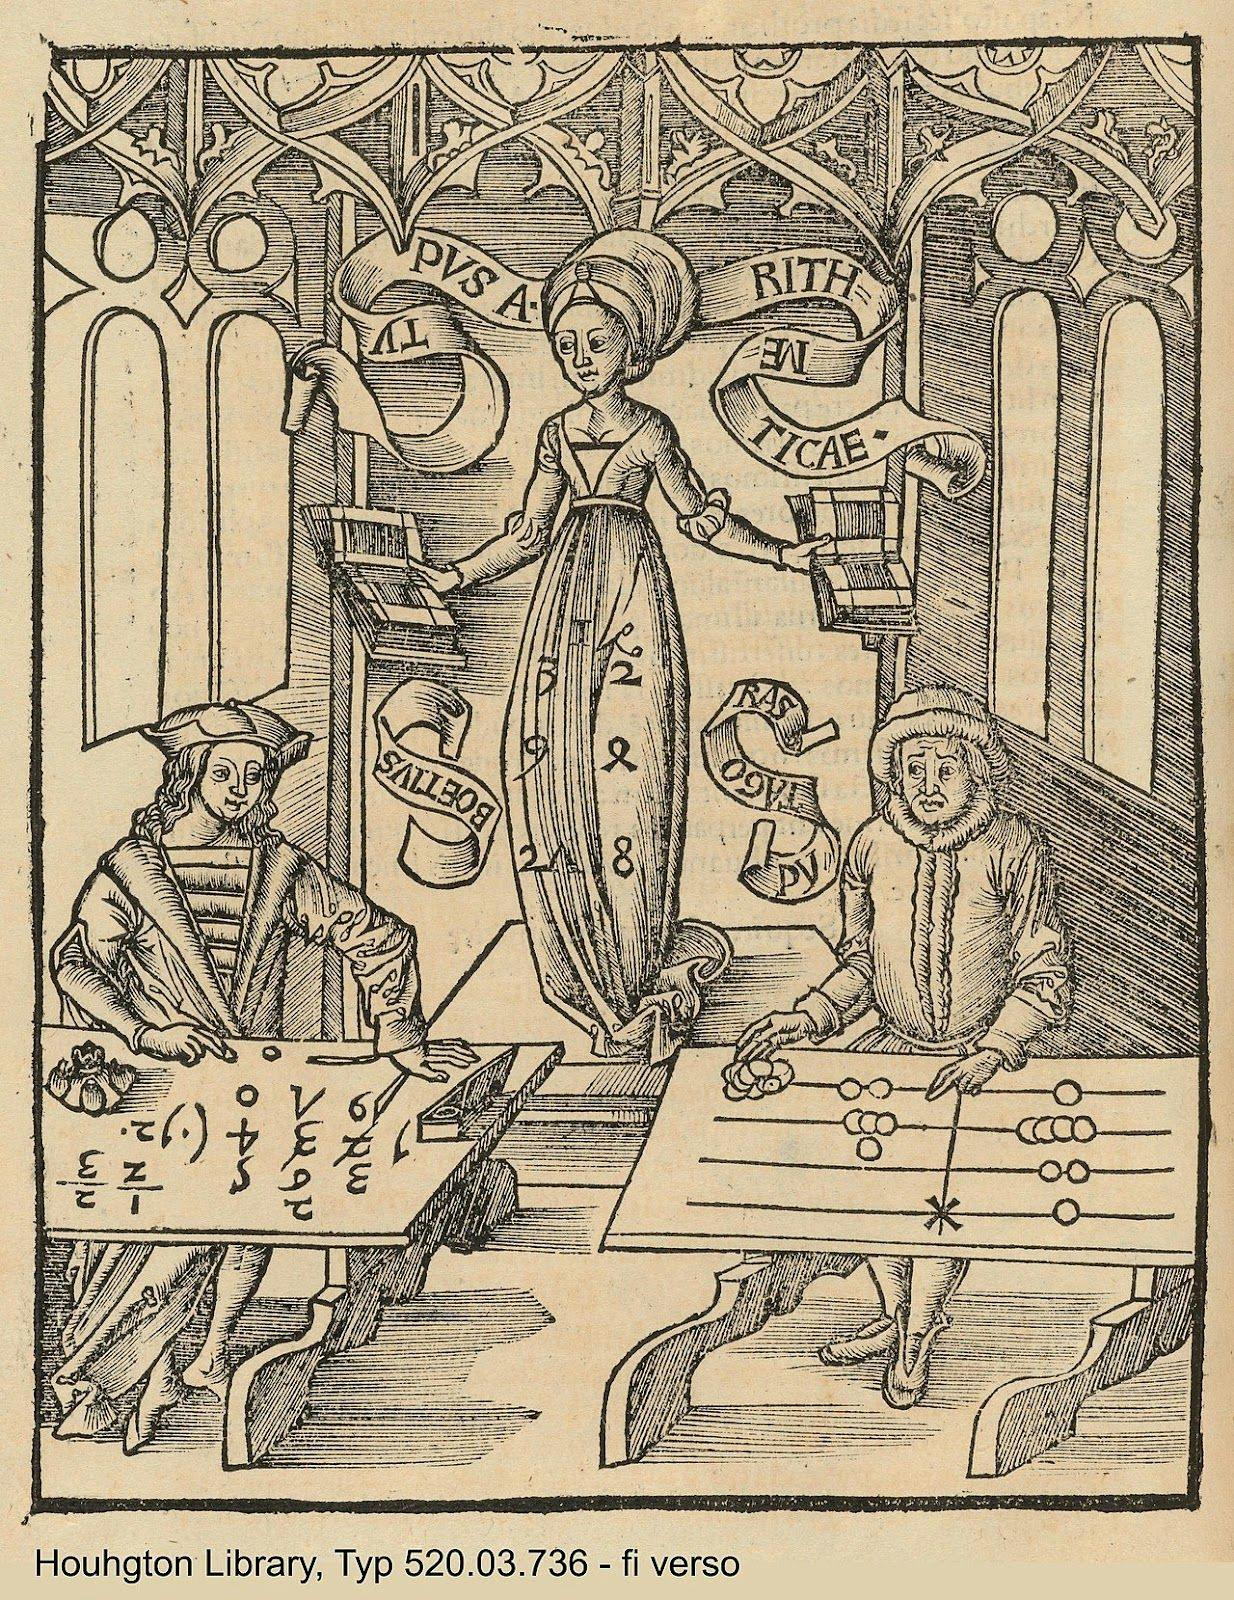 From Margarita Philosophica by Gregor Reisch, 1508